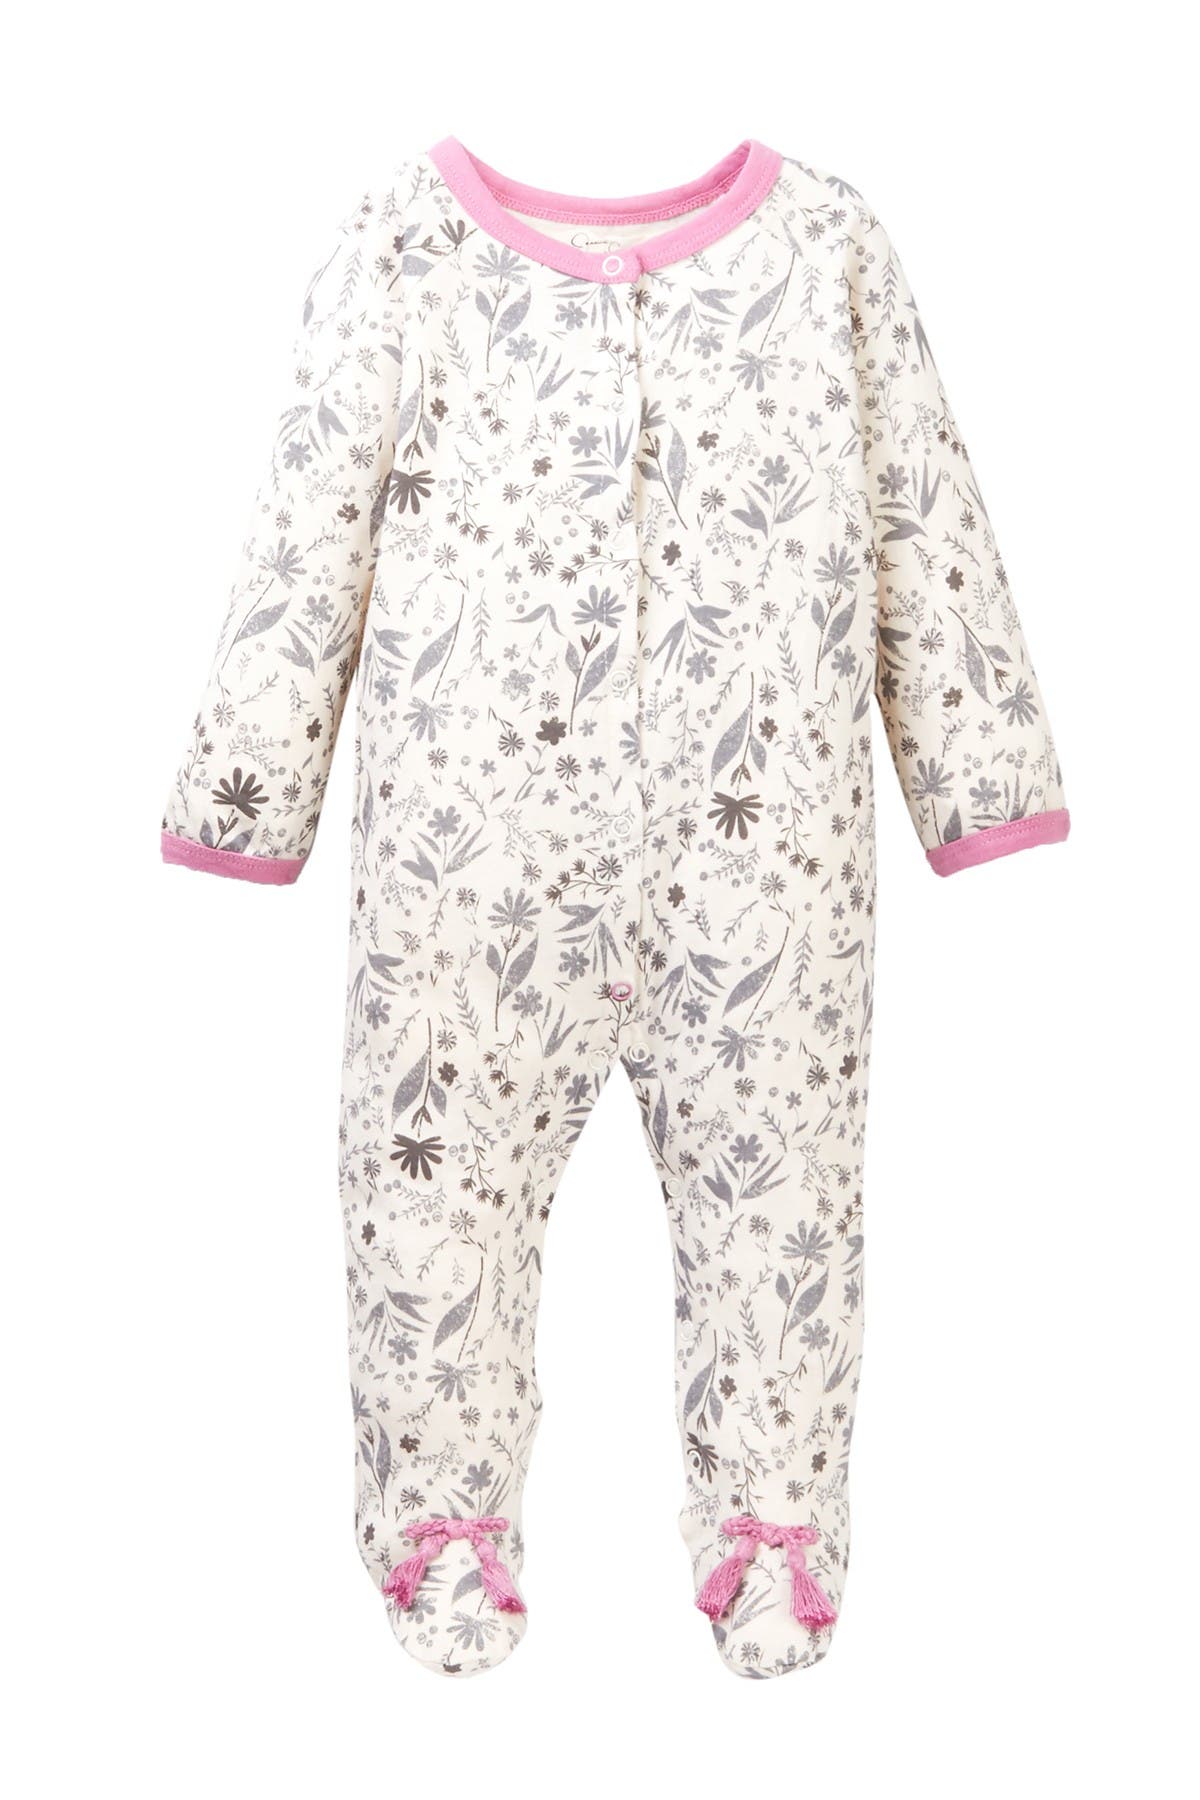 jessica simpson baby pajamas